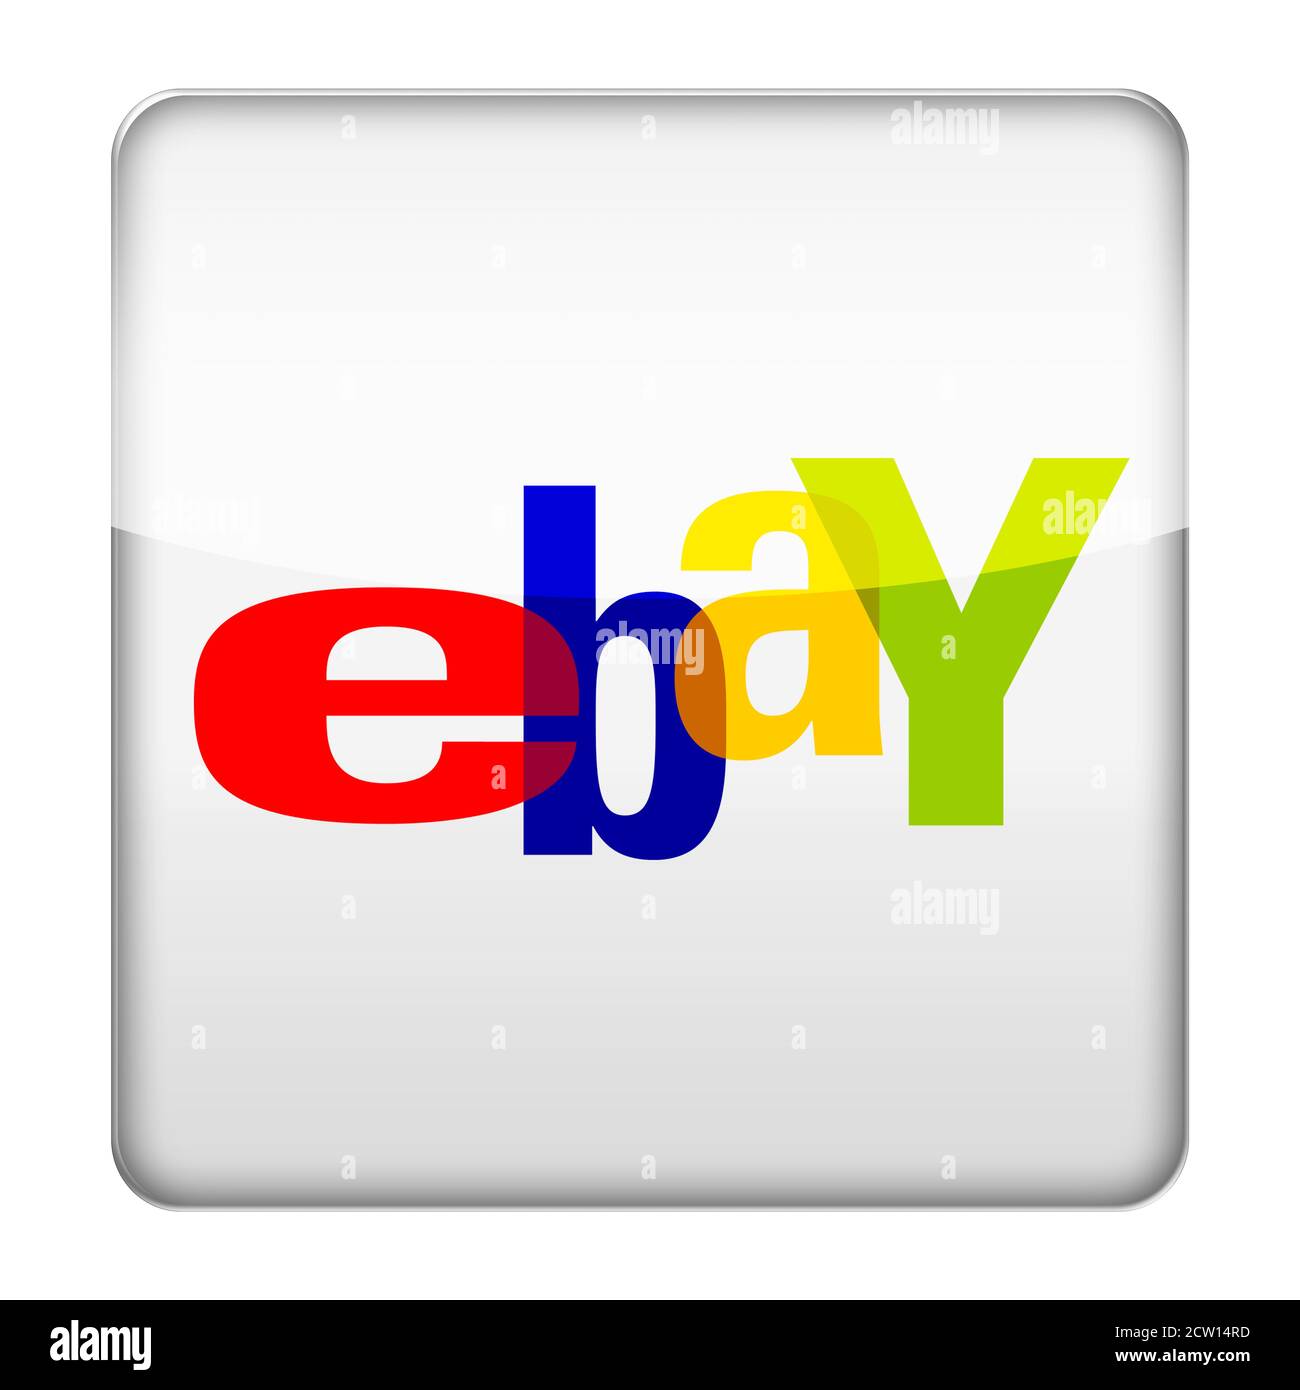 Ebay logo icon Banque de photographies et d'images à haute résolution -  Alamy